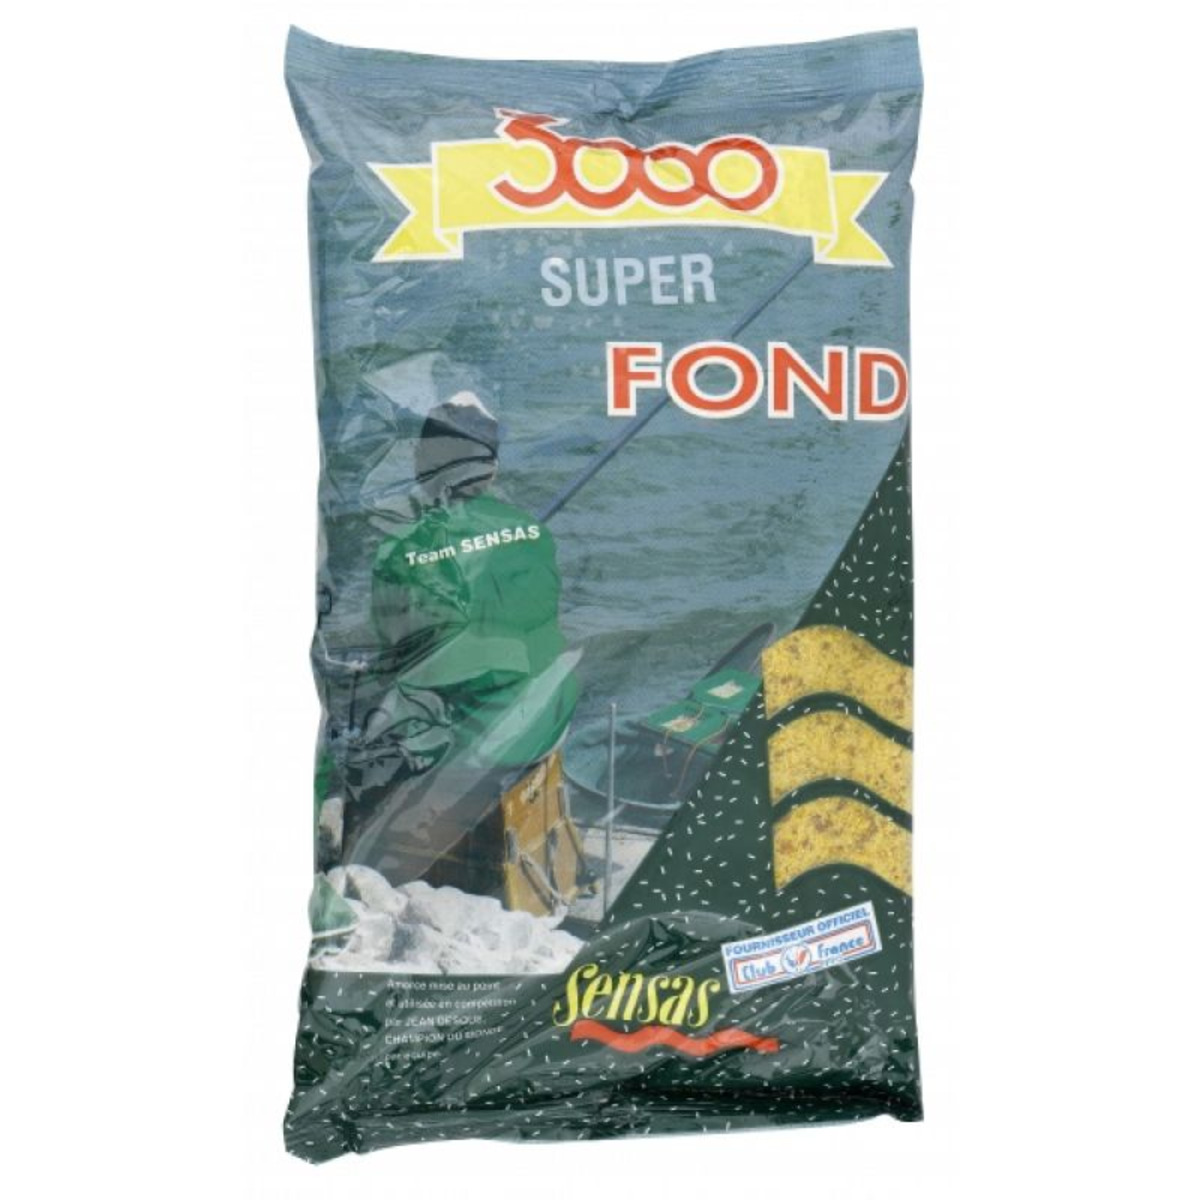 Sensas 3001 Super Fond - 1 kg